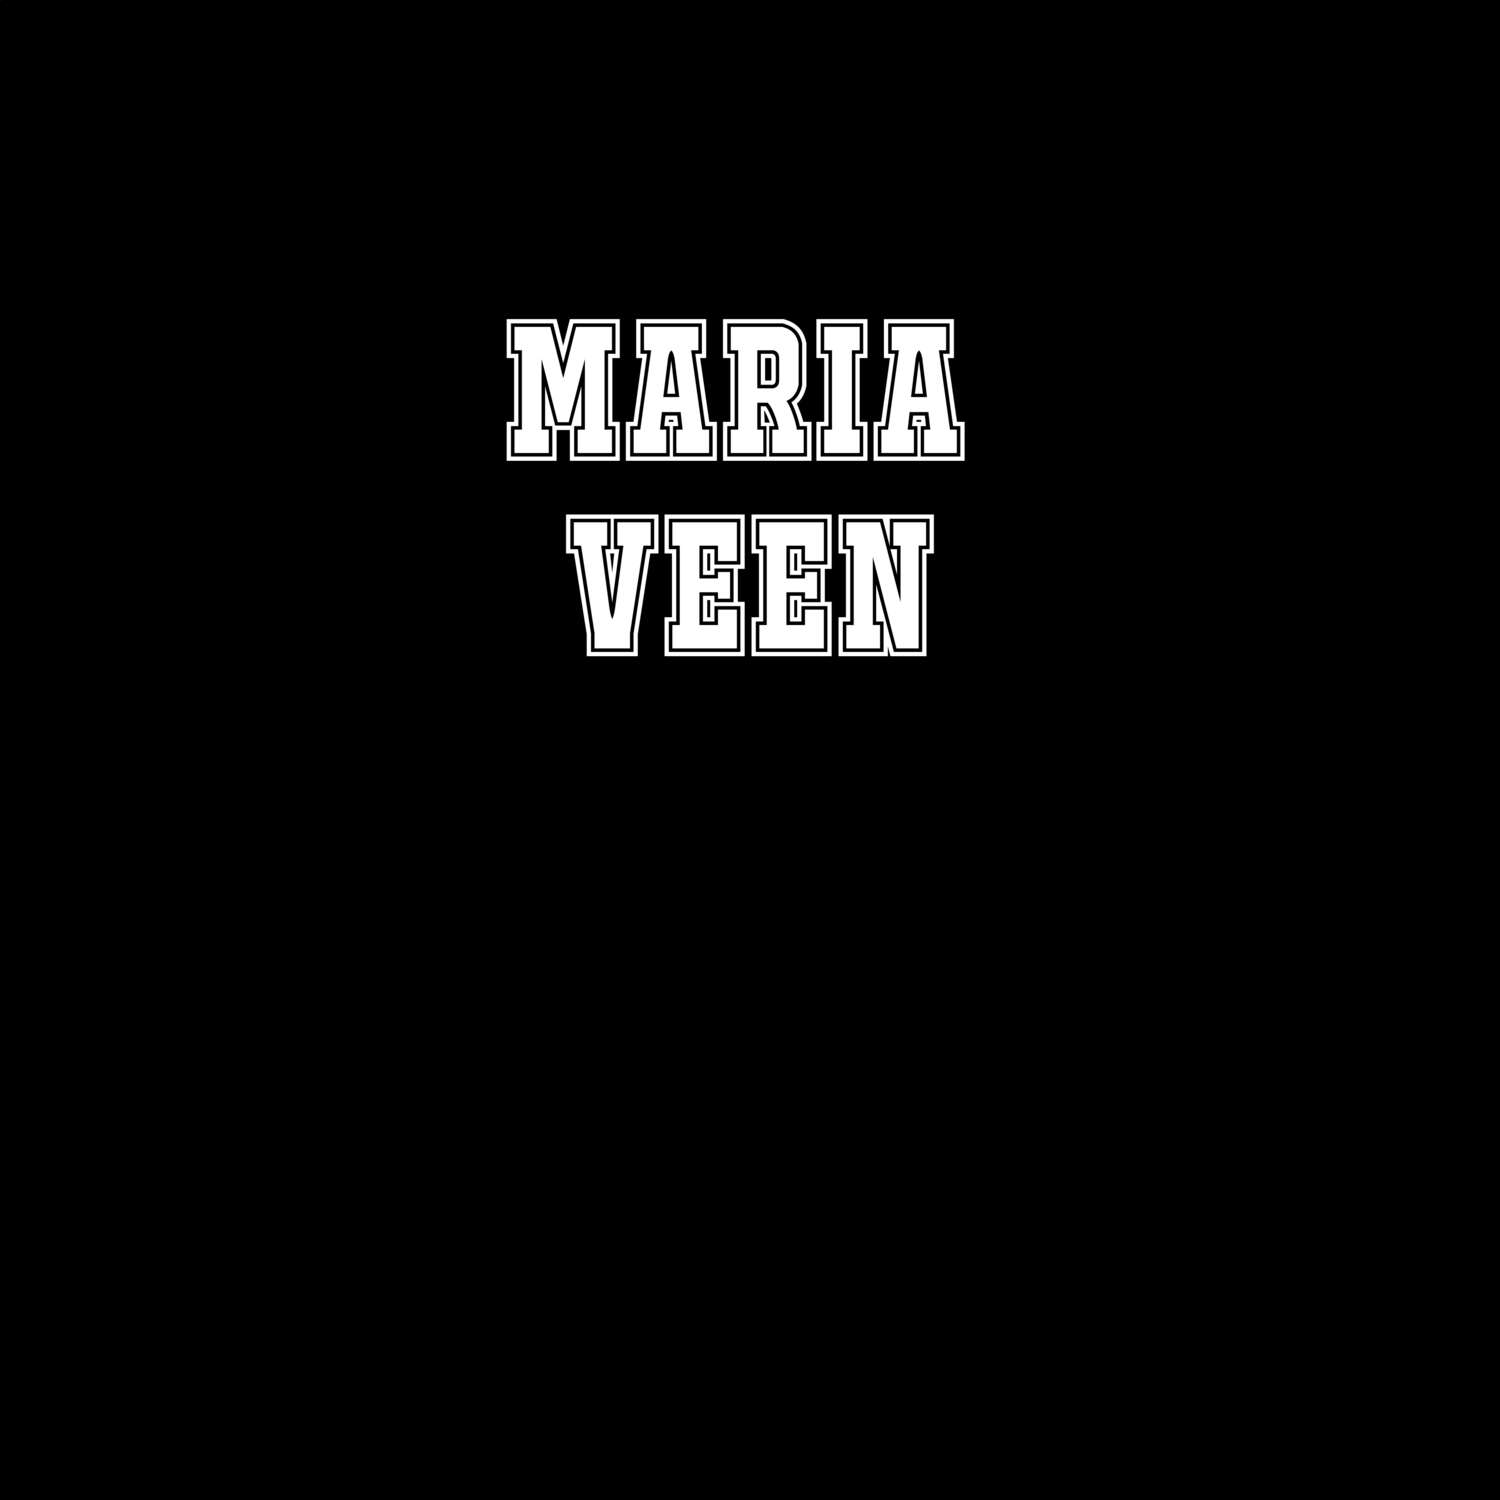 Maria Veen T-Shirt »Classic«